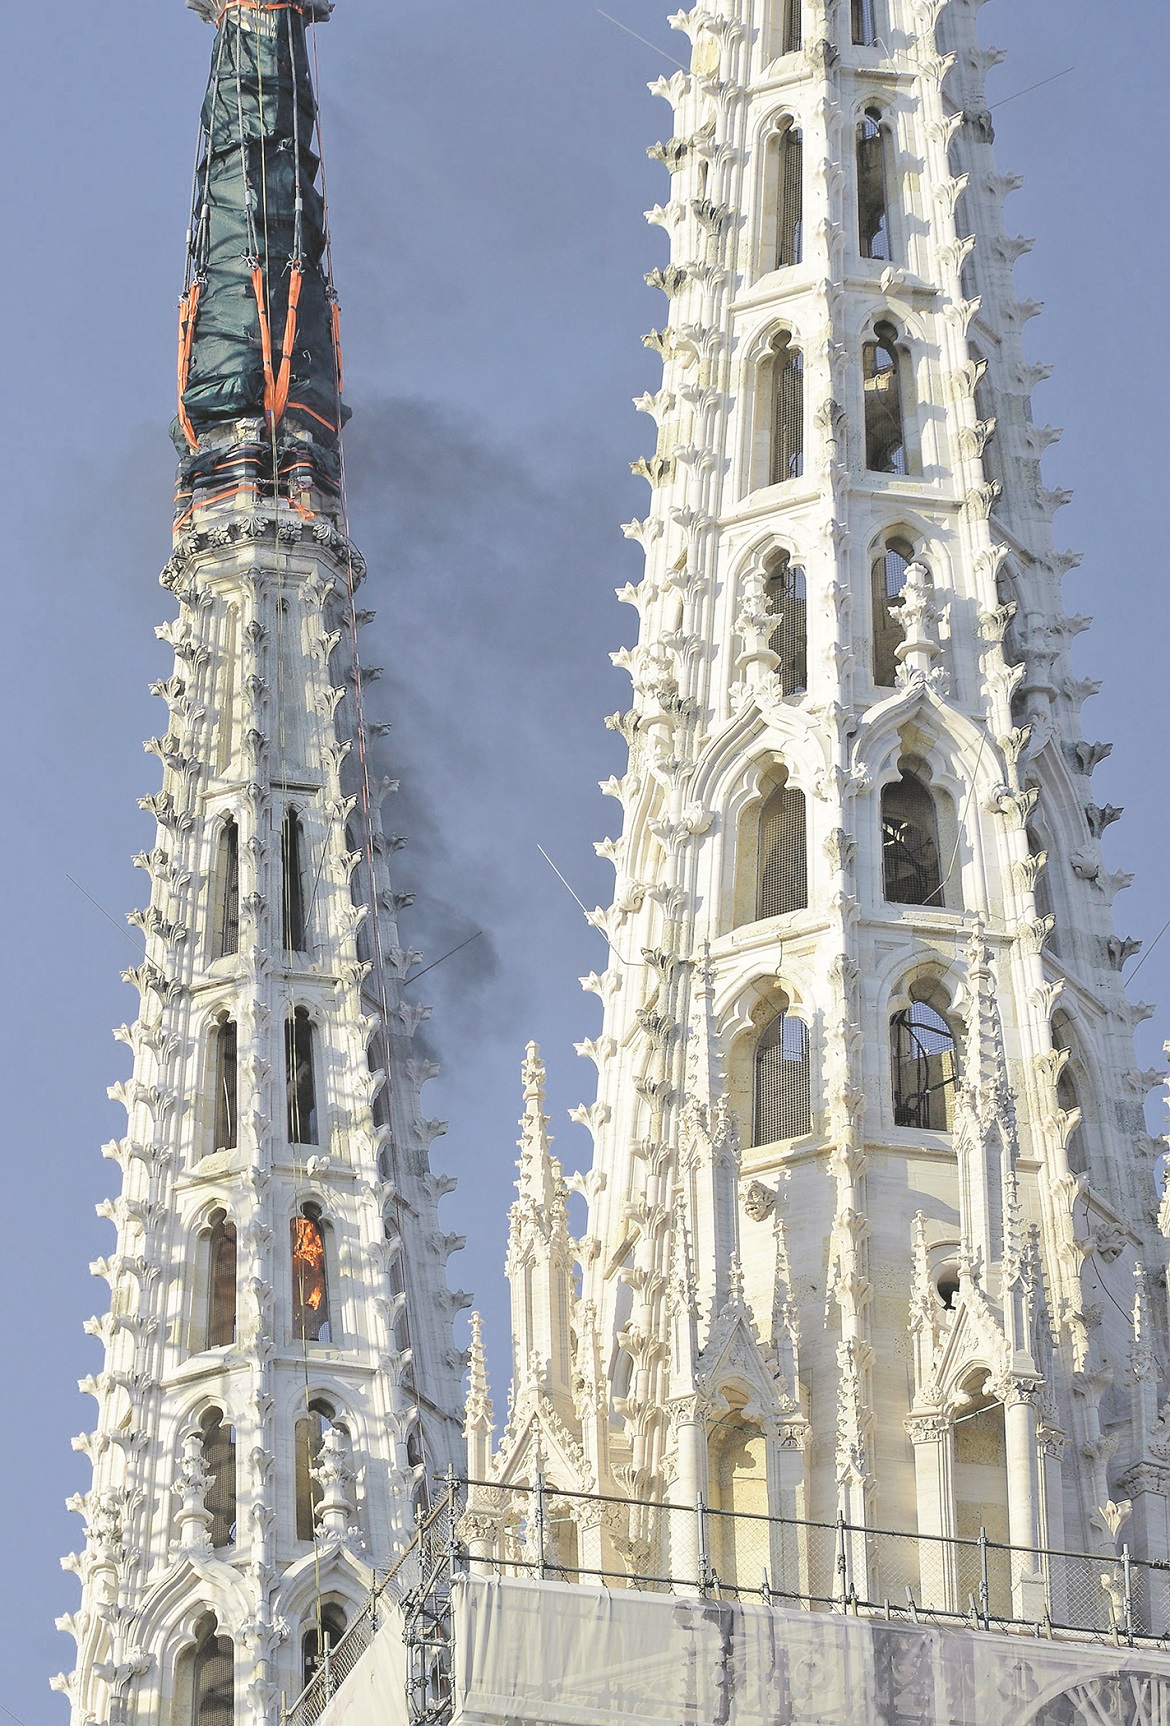 Zagreb, 170420
Kaptol. Katedrala, vrh sjevernog tornja, koji je ostecen u potresu, nakon kontroliranih detonacija eksplozivom sigurno je uklonjen.
foto: Bruno Konjevic / CROPIX